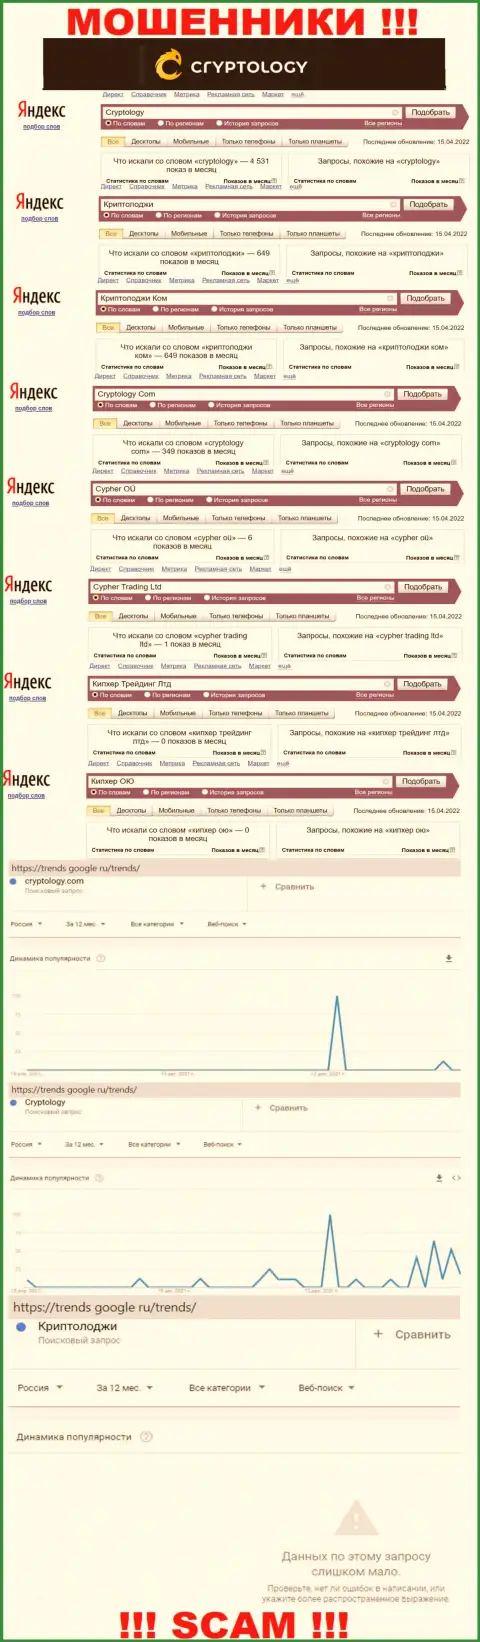 Суммарное число поисковых запросов в поисковиках сети internet по бренду мошенников Кипхер Трейдинг Лтд